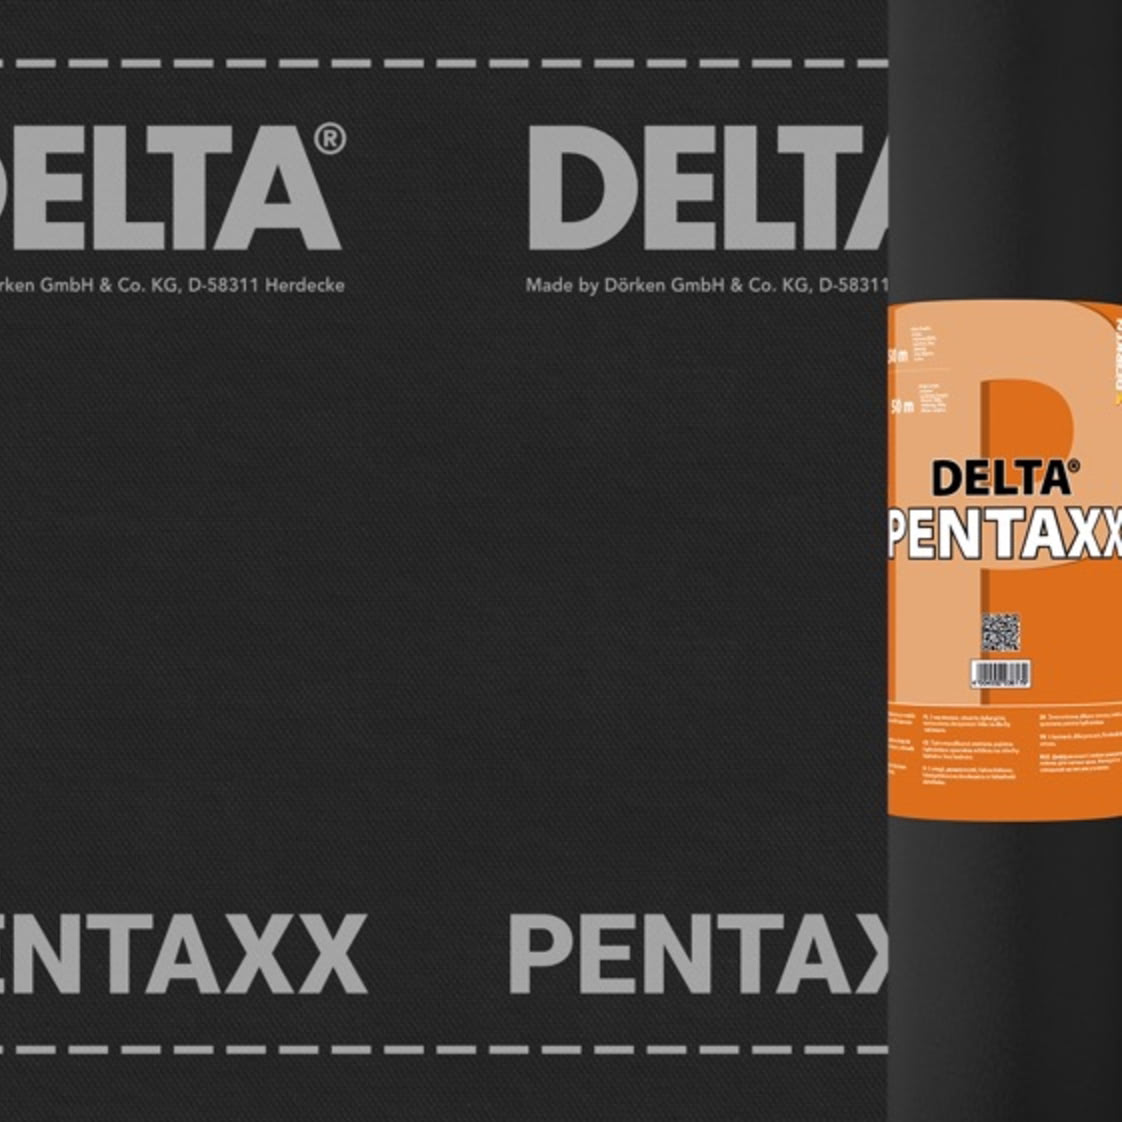 DELTA-PENTAXX